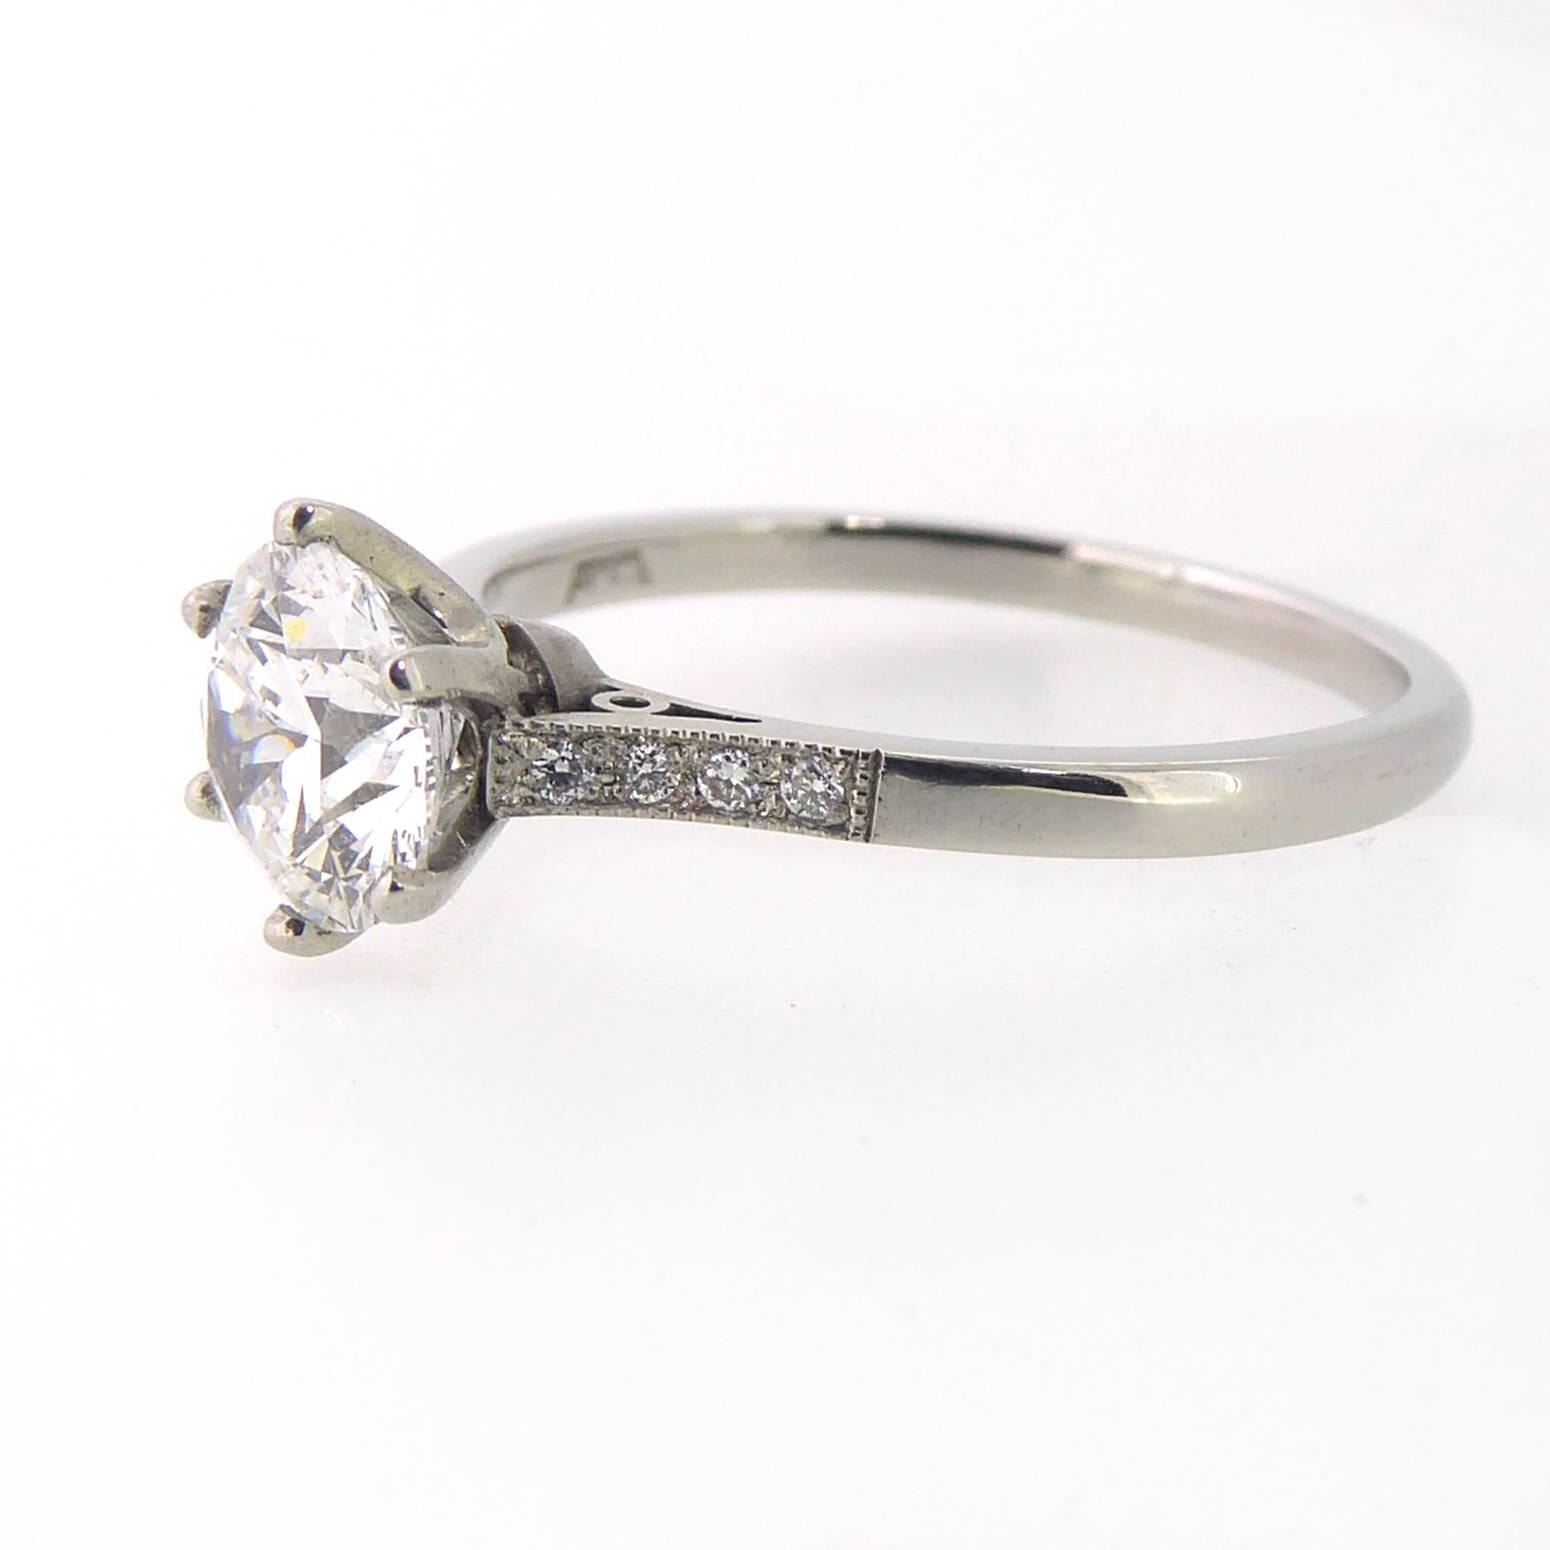 GIA Certified 1.04 Carat Brilliant Cut Diamond Solitaire Ring, Platinum 1